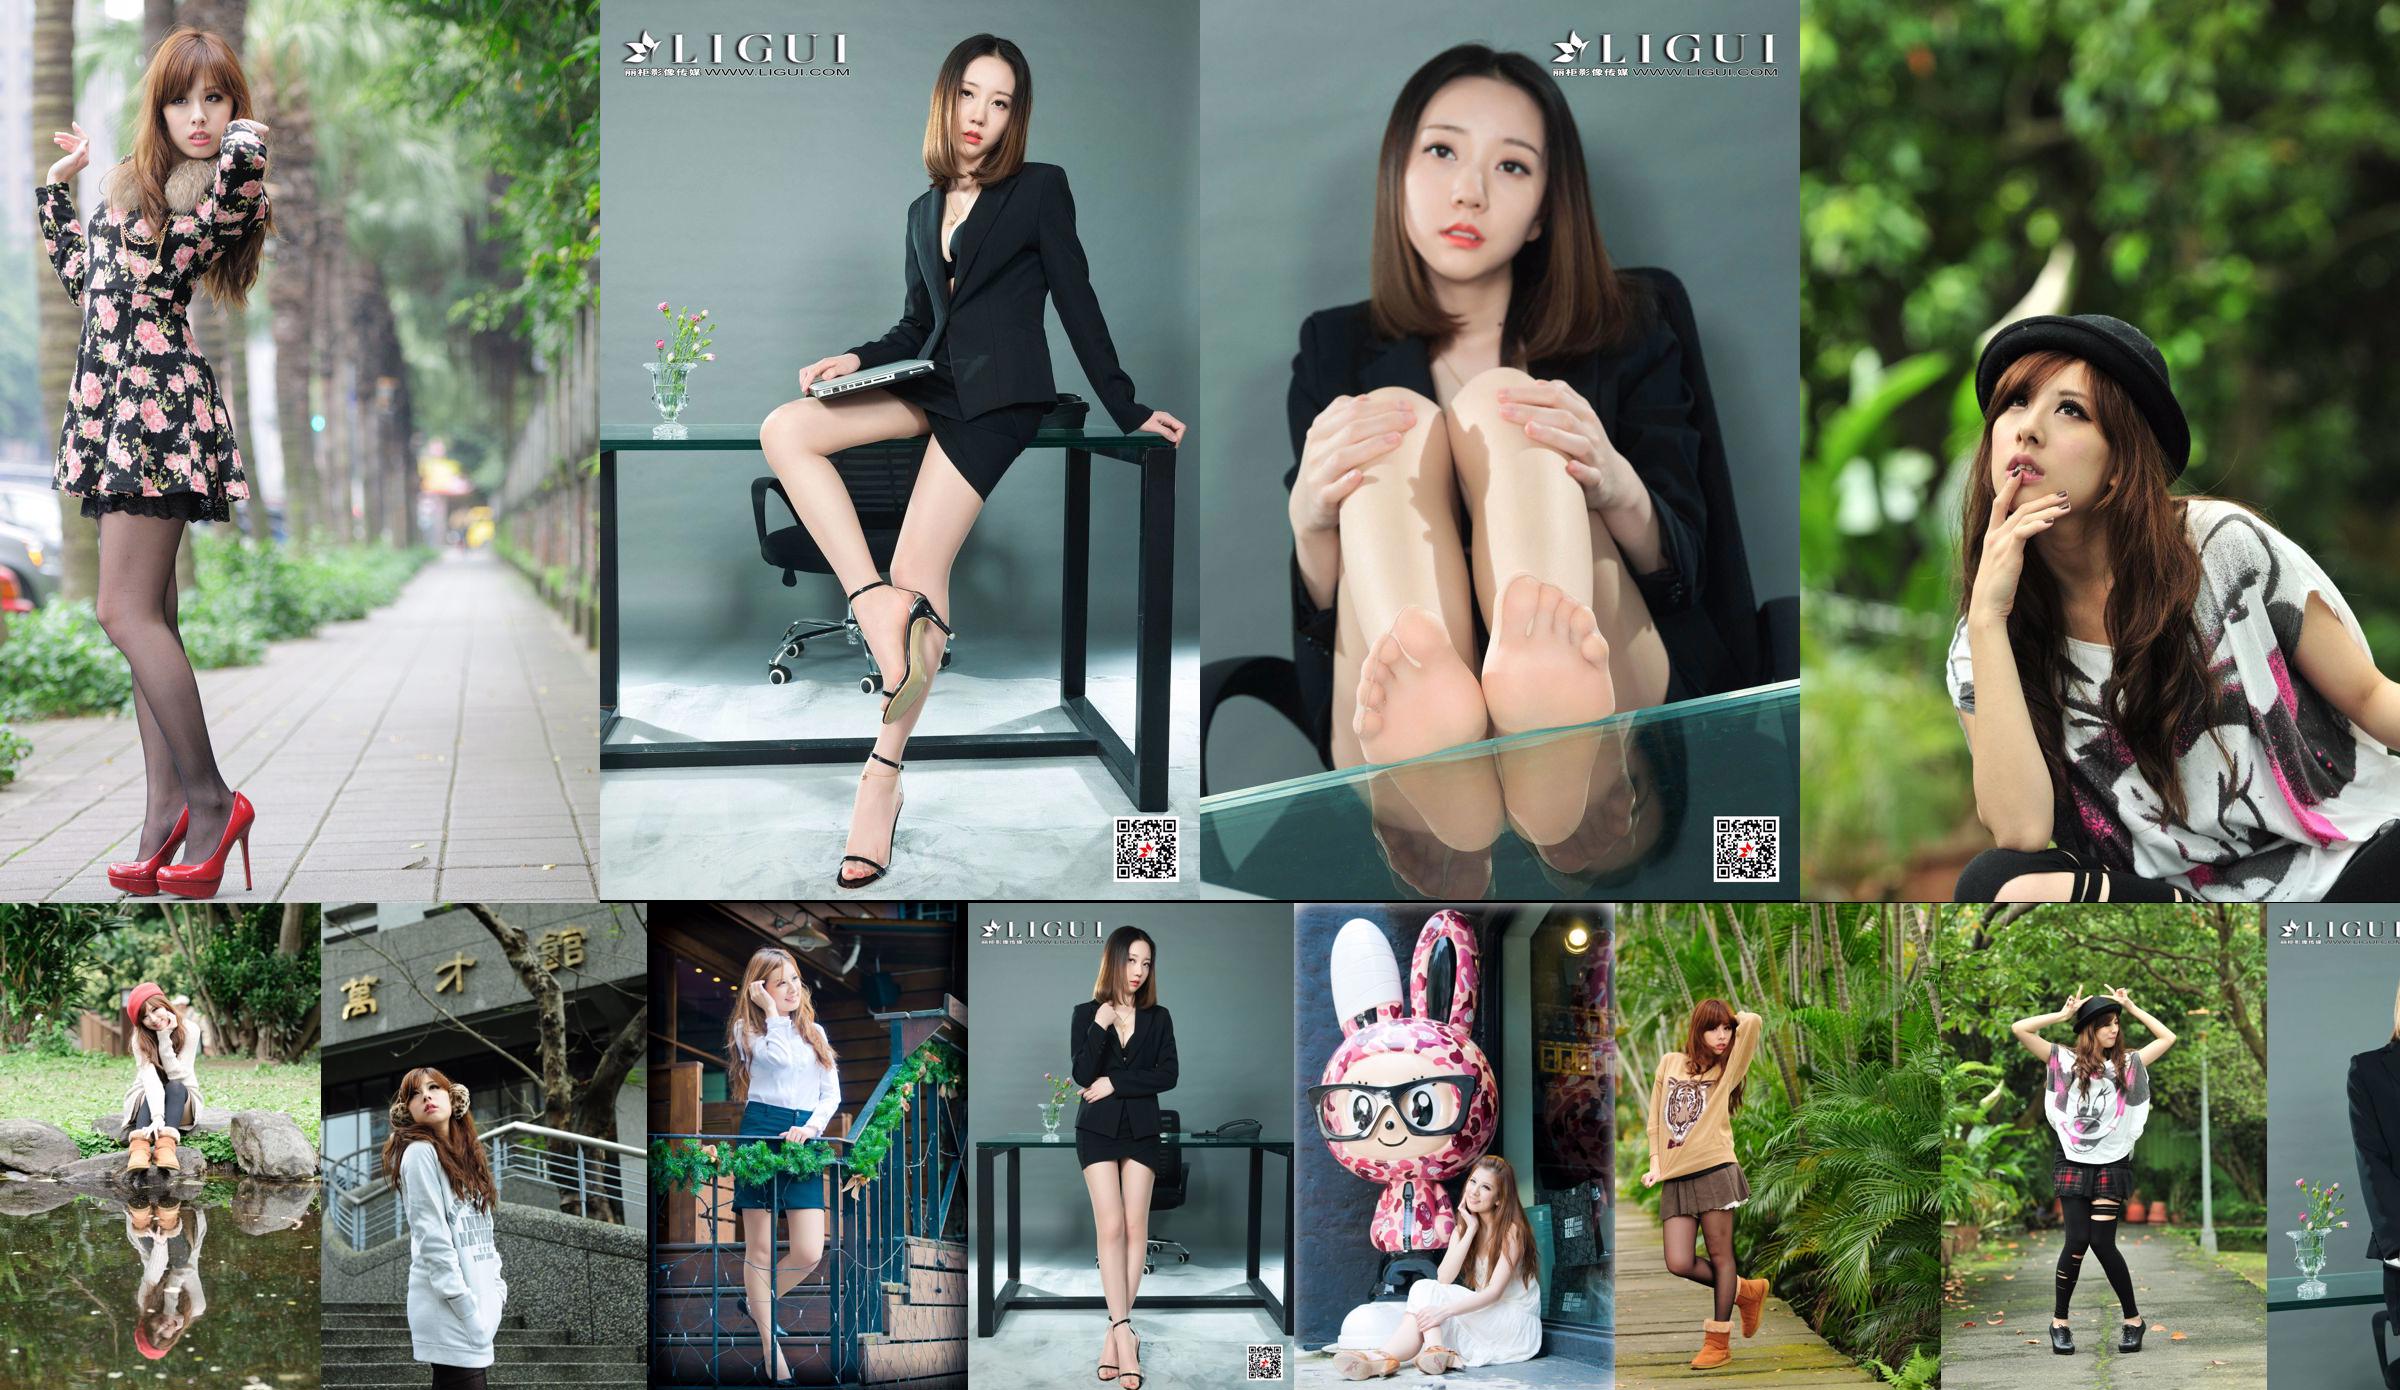 La hermana taiwanesa Xiaomi Kate su colección de fotos "Pequeñas imágenes frescas al aire libre" No.cab404 Página 1